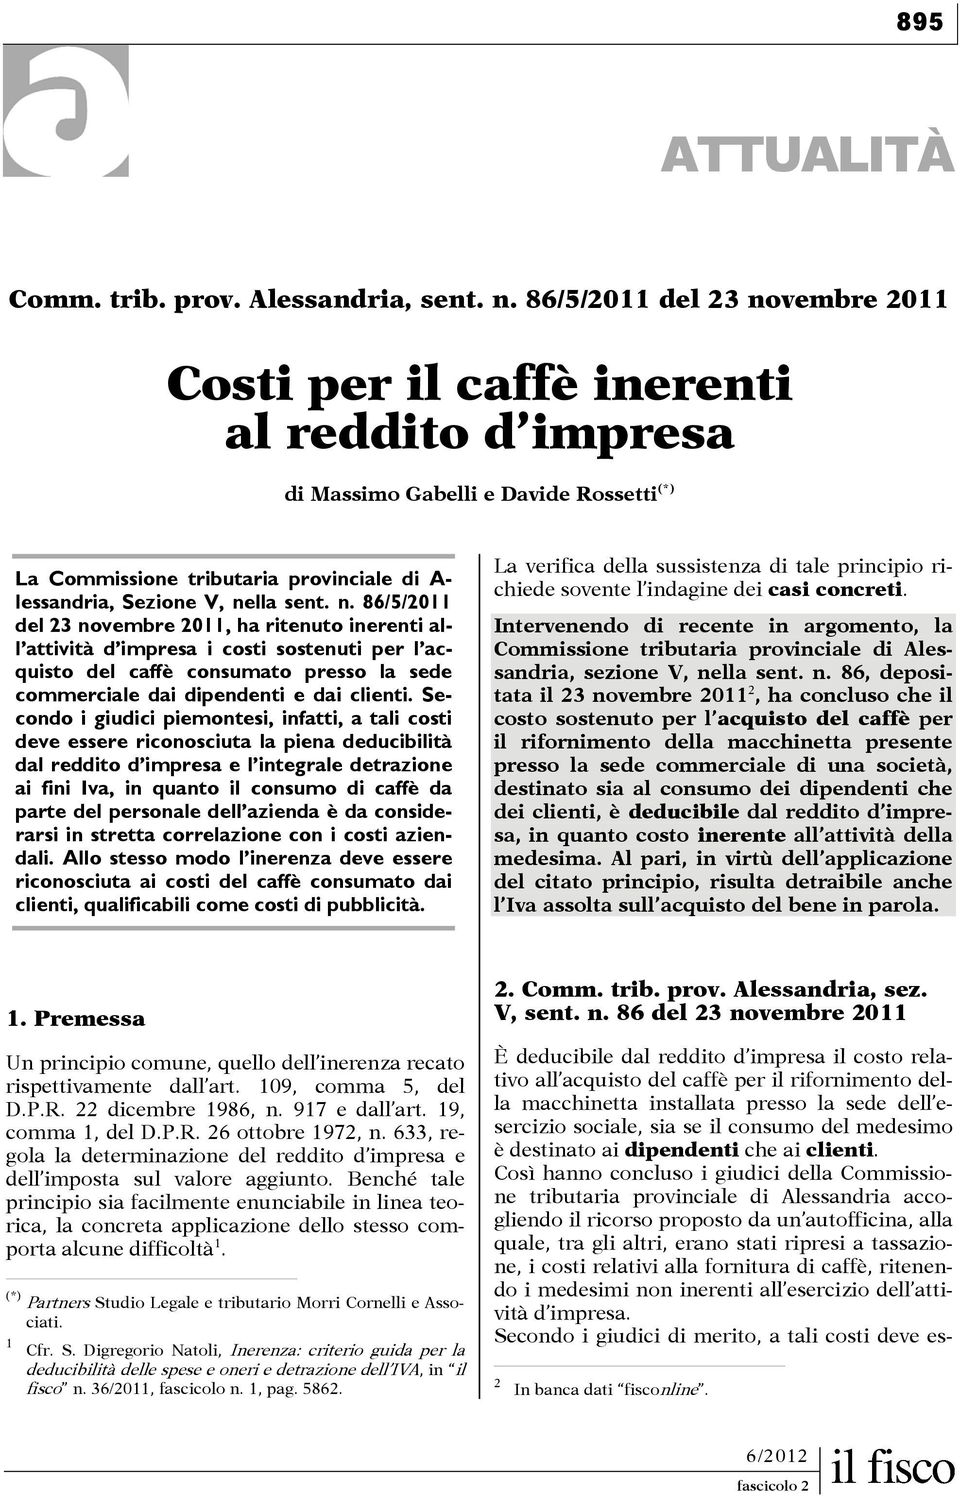 n. 86/5/2011 del 23 novembre 2011, ha ritenuto inerenti all attività d impresa i costi sostenuti per l acquisto del caffè consumato presso la sede commerciale dai dipendenti e dai clienti.